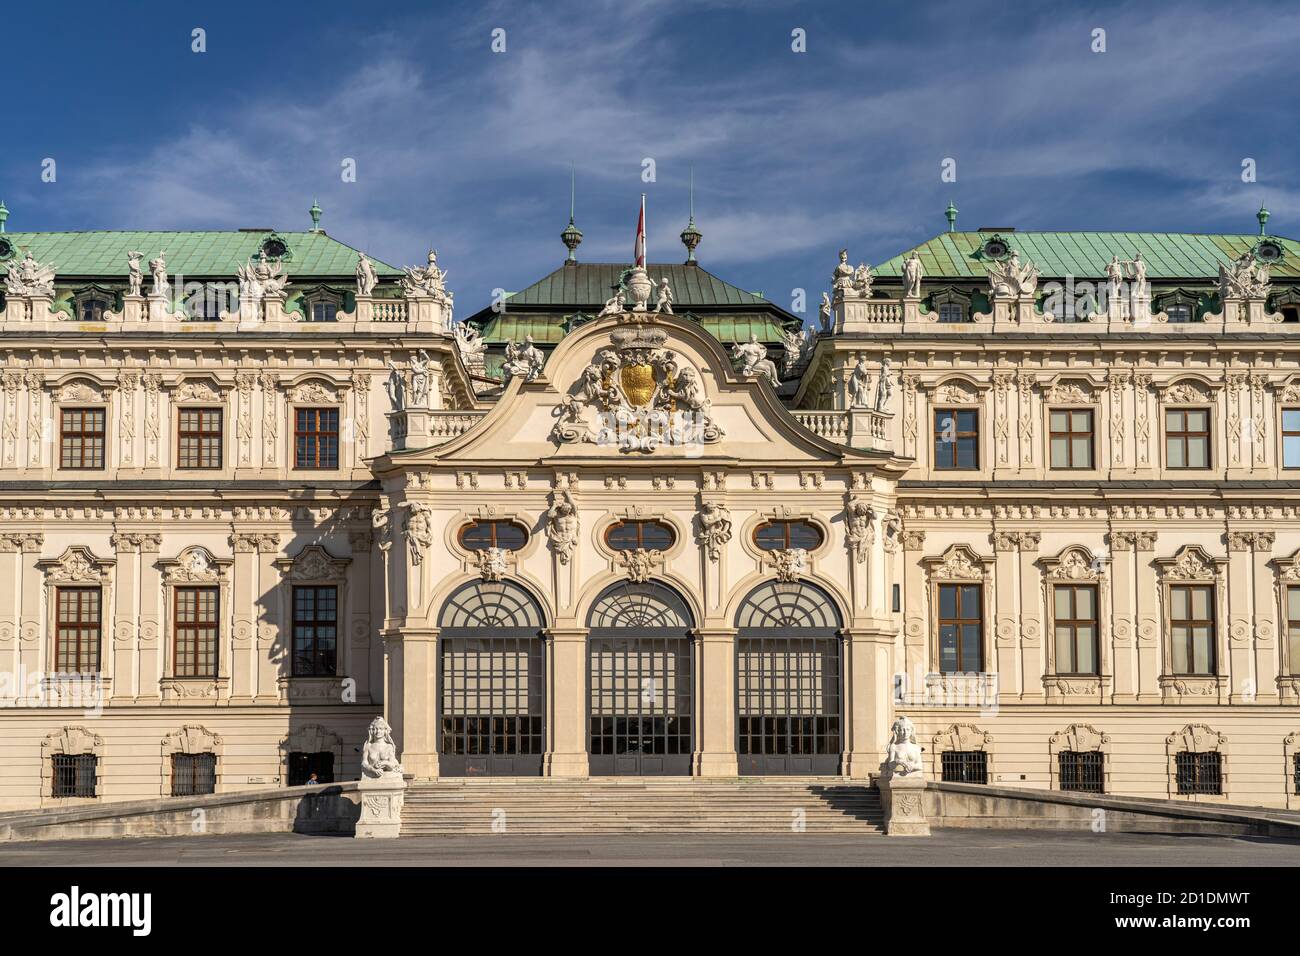 DAS Obere Schloss Belvedere à Wien, Österreich, Europa | Palais du Belvédère supérieur à Vienne, Autriche, Europe Banque D'Images